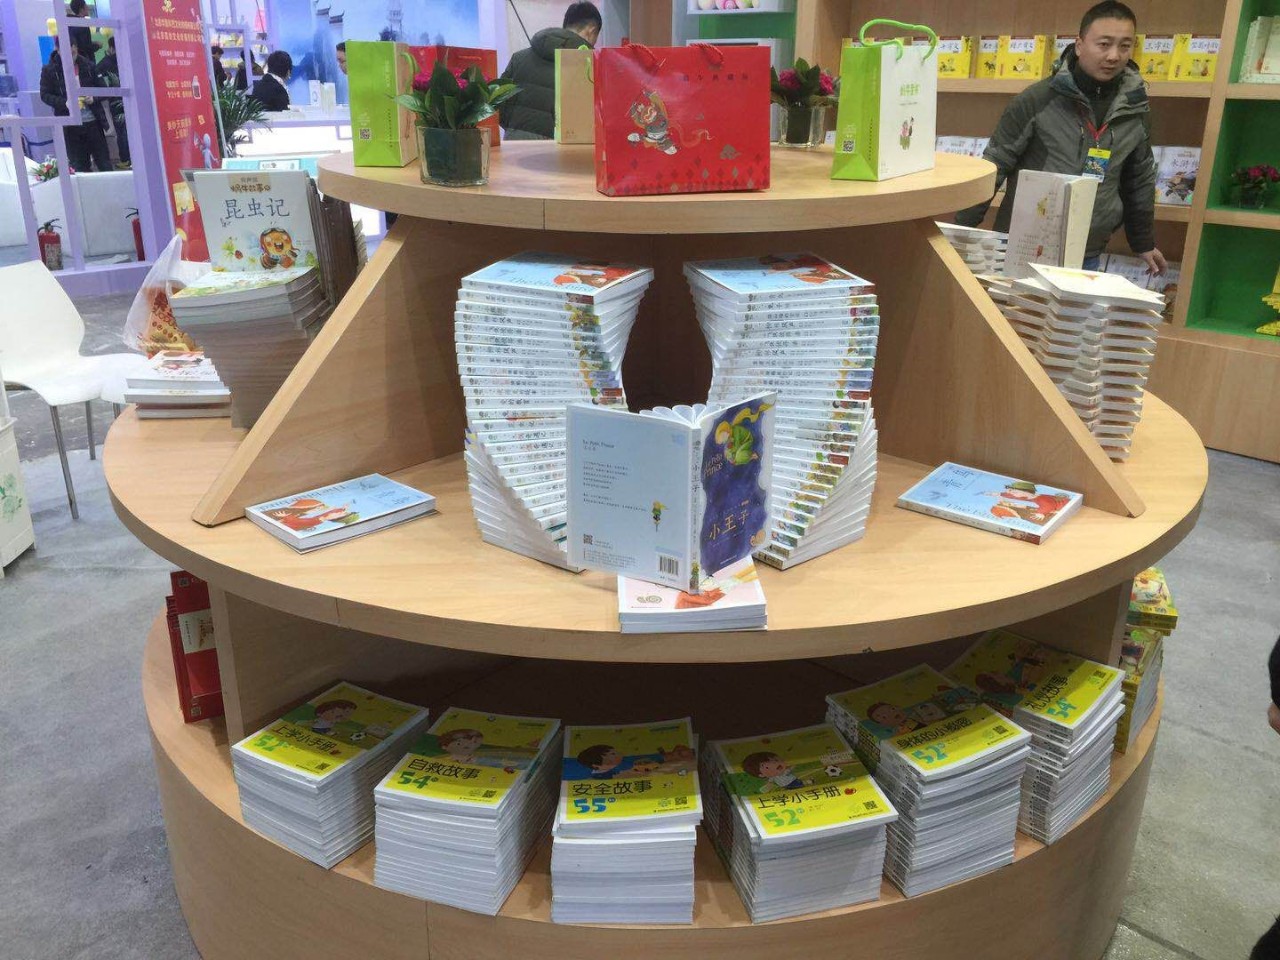 恭贺蜗牛童书荣获北京图书订货会"十佳展台设计"称号